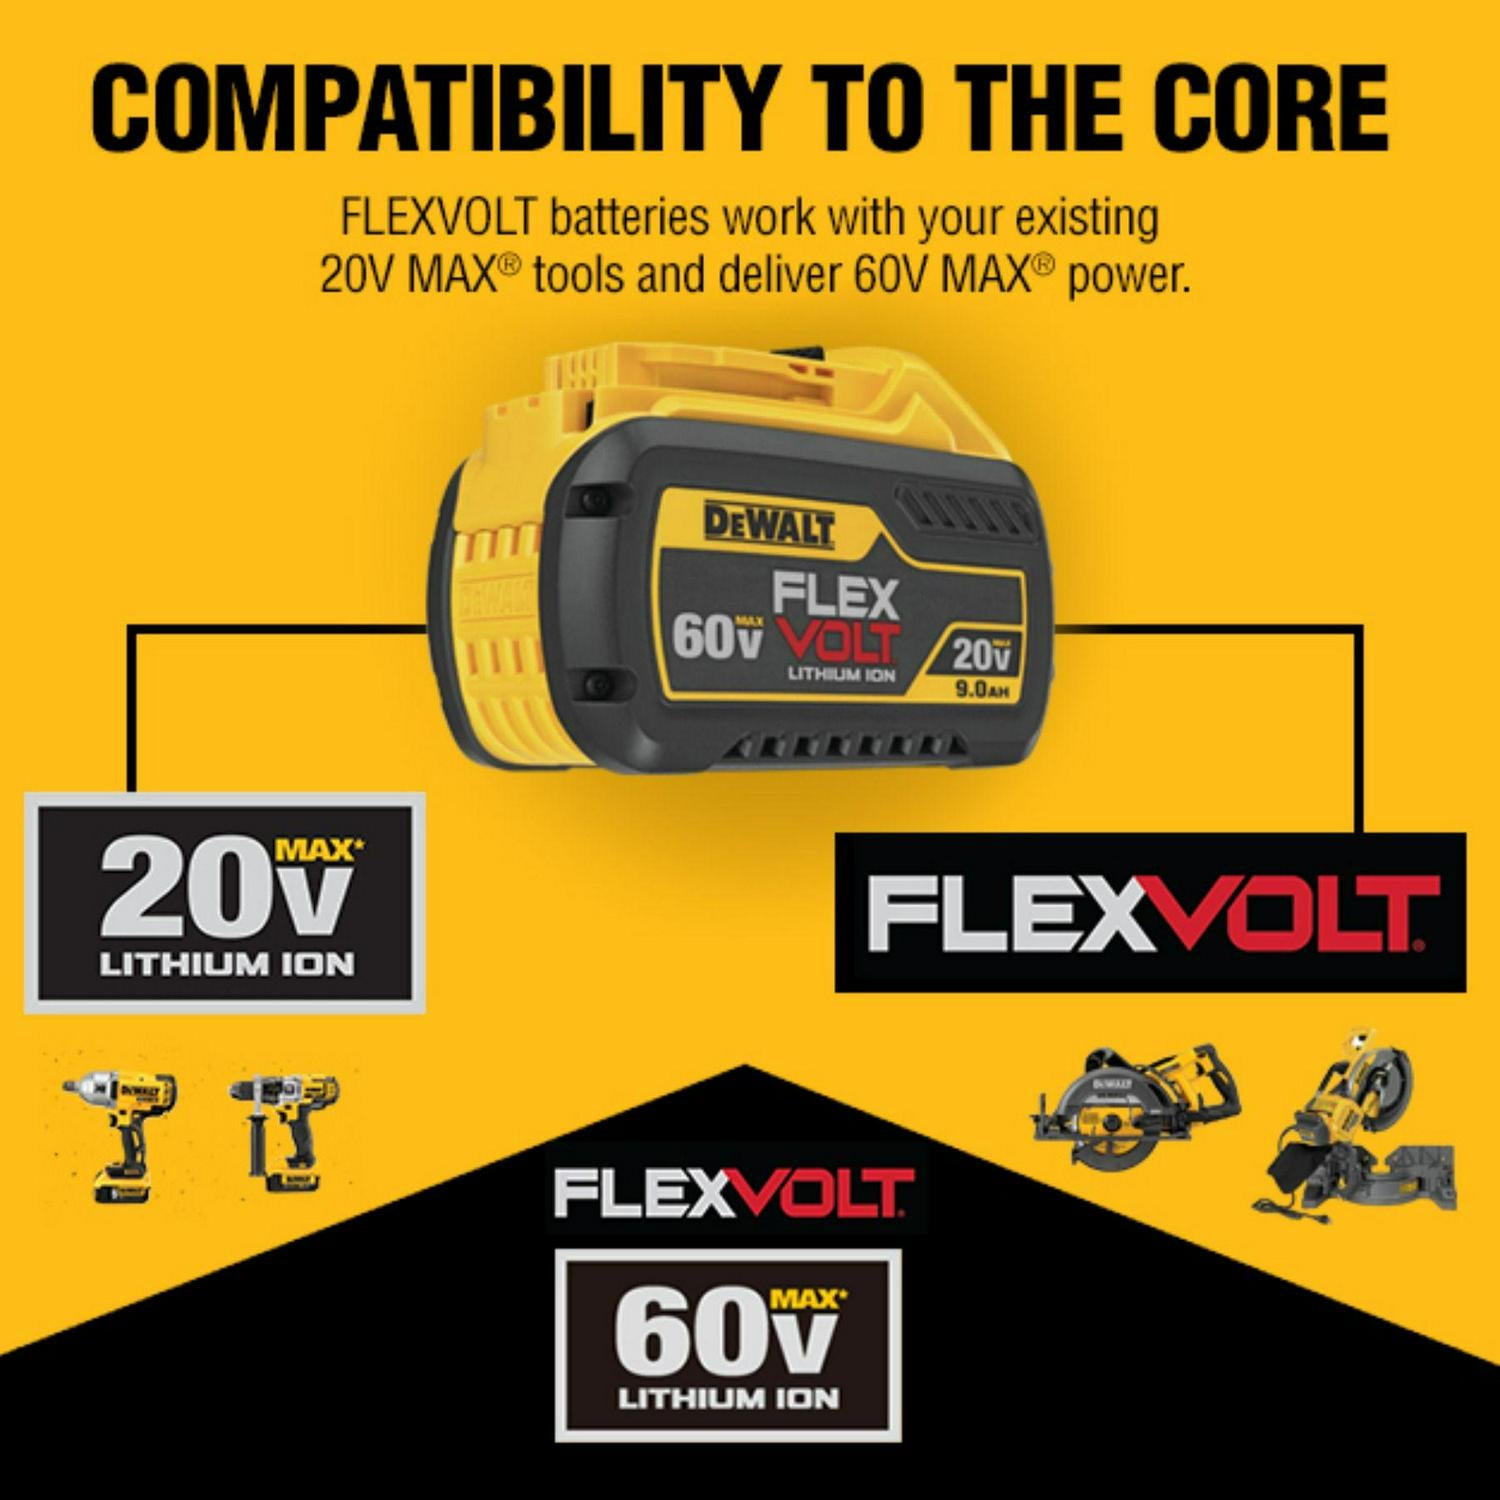 Dewalt Flexvolt 60V MAX* String Trimmer Kit, 3Ah Battery and Charger Included - image 3 of 10